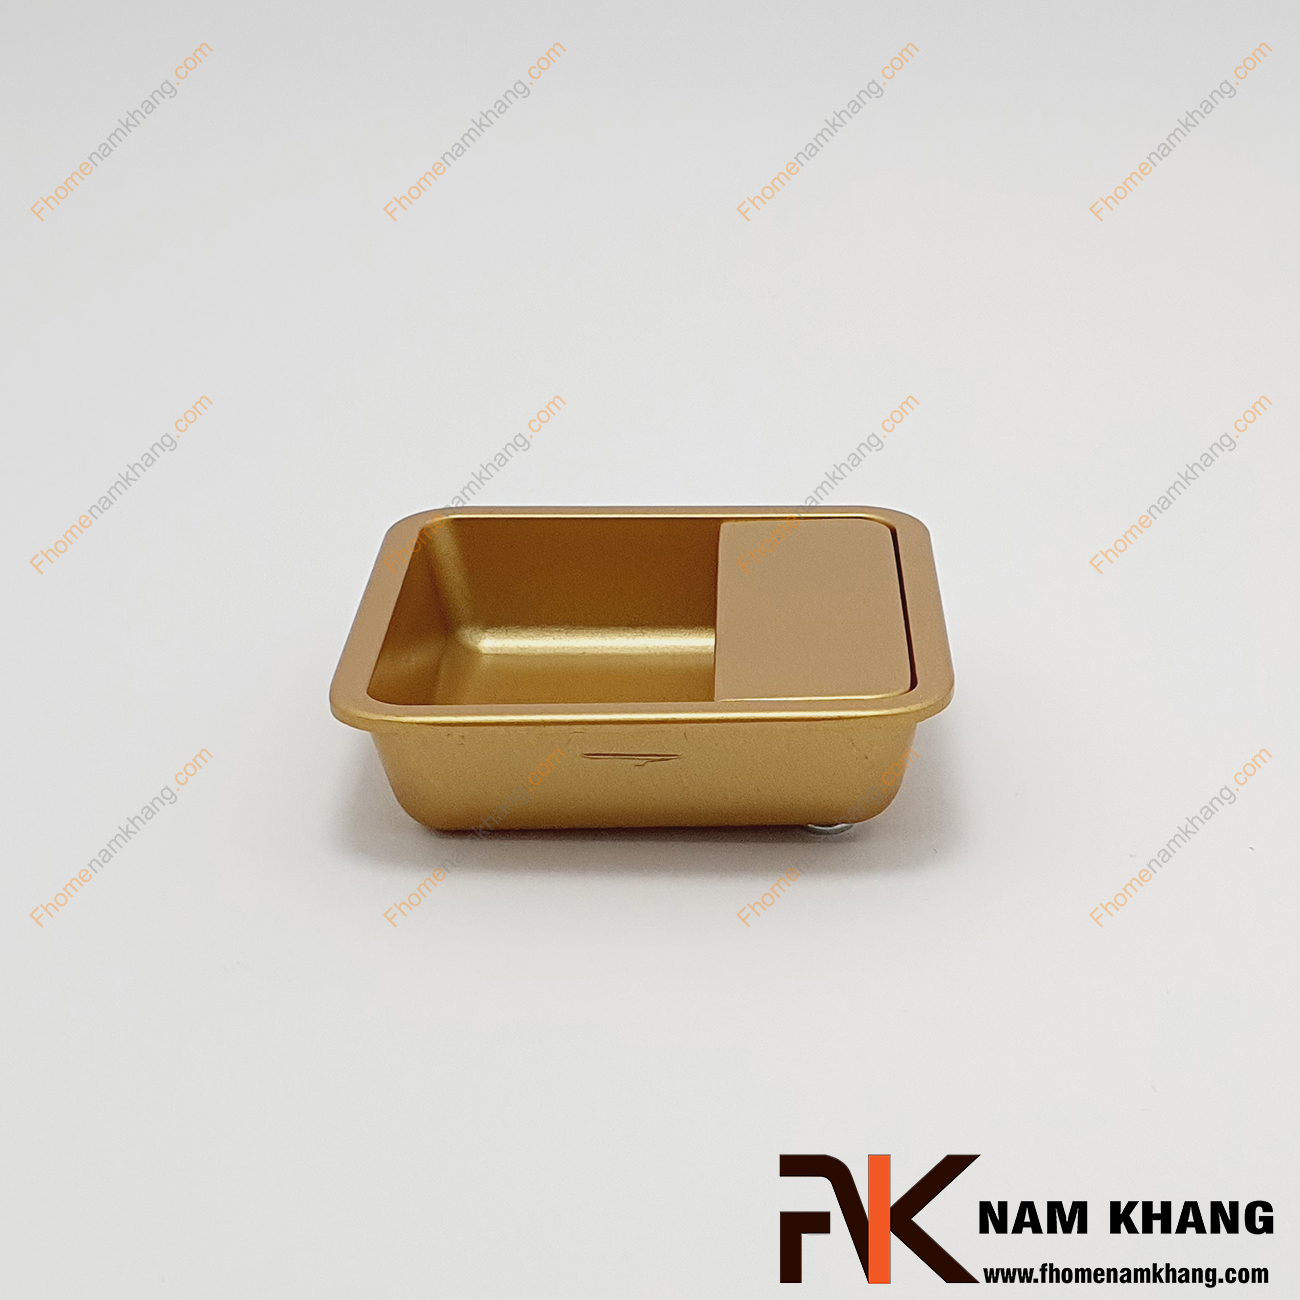 Tay nắm âm tủ màu vàng NK462V-V là loại tay nắm chuyên dùng cho các loại tủ đặt ở những nơi có không gian hạn chế hoặc dùng để nâng cao tính thẫm mỹ của sản phẩm